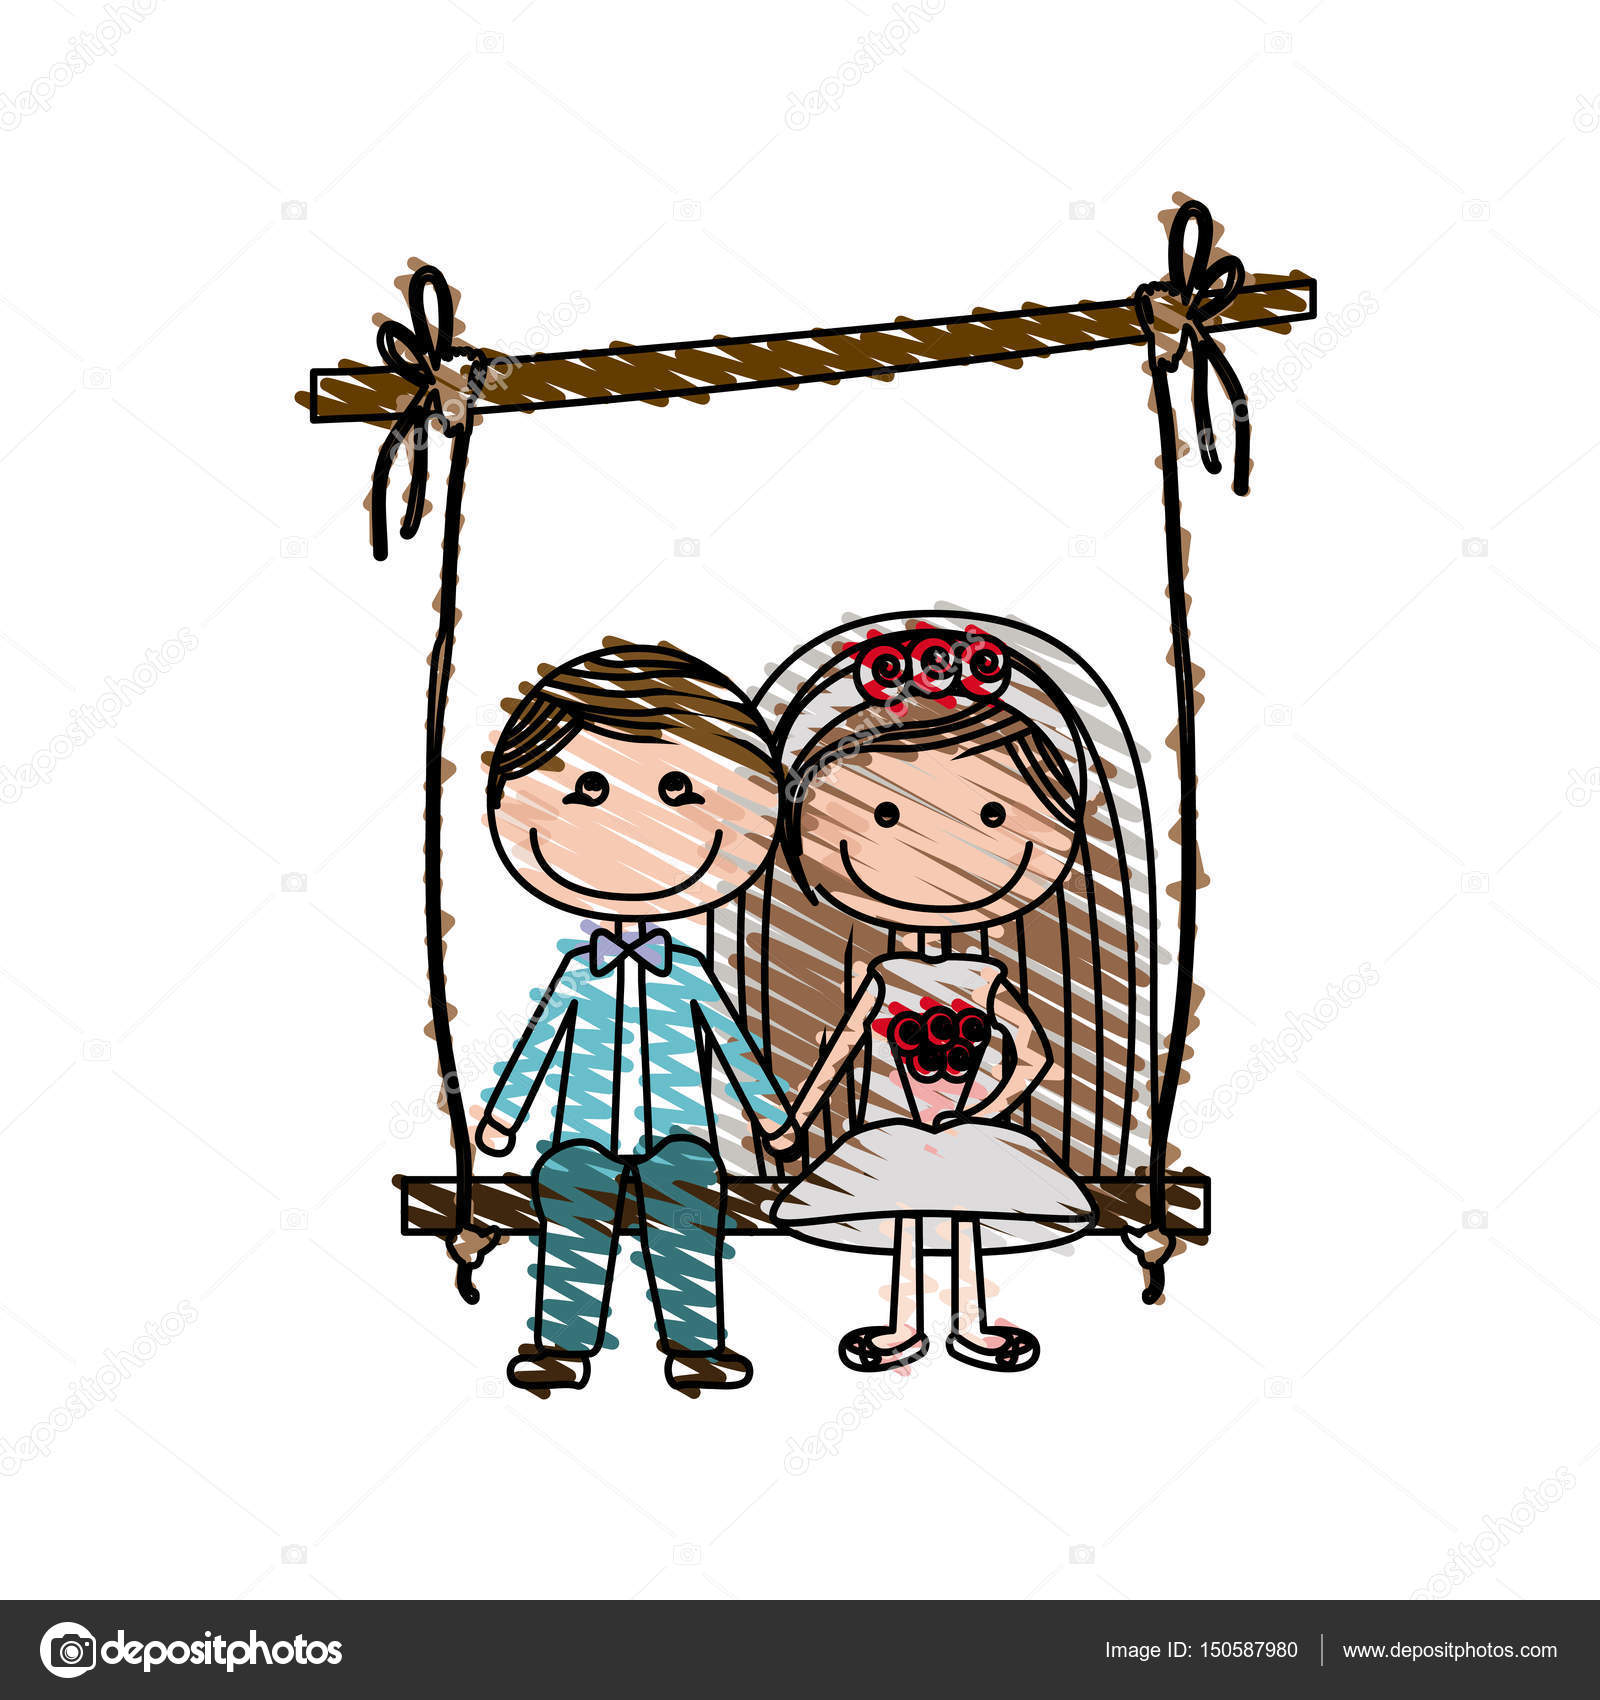 Colore disegno a matita di caricatura sposato ragazzo e ragazza sedersi in altalena appeso a un ramo illustrazione di vettore — Vettoriali di grgroupstock